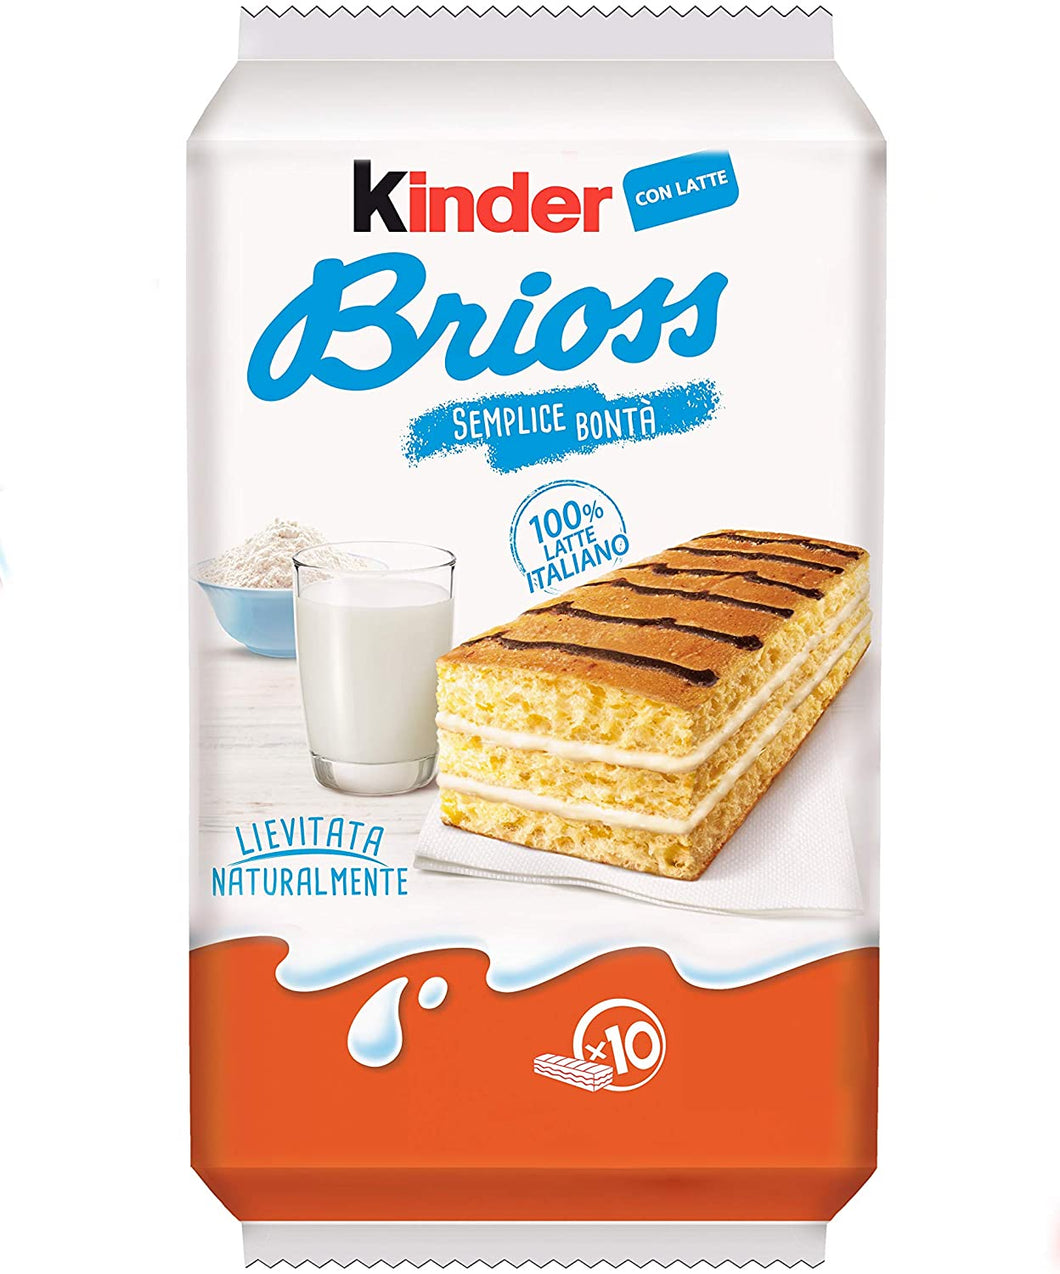 Kinder Brioss with Milk 280g - 9.8oz